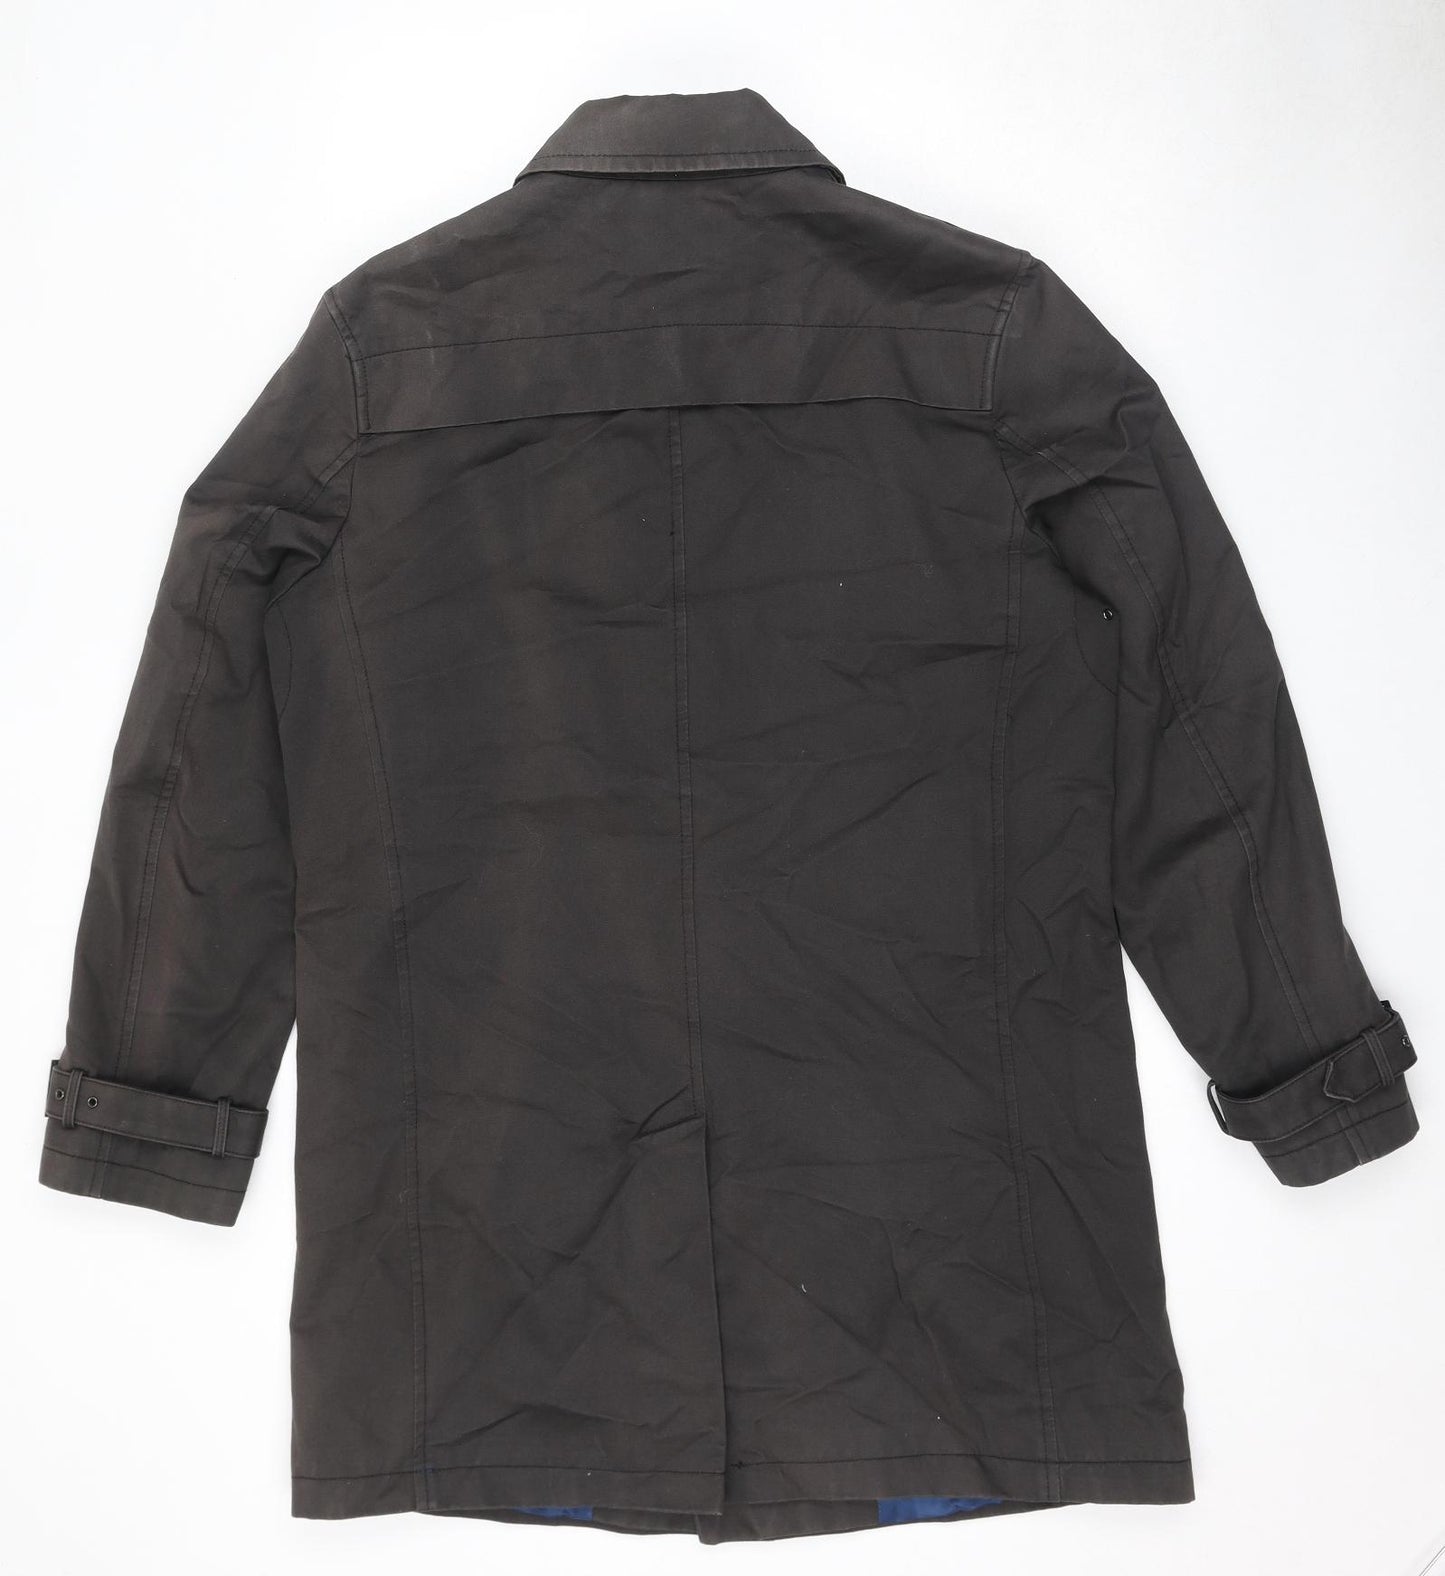 Rhino Mens Brown Overcoat Coat Size M Zip